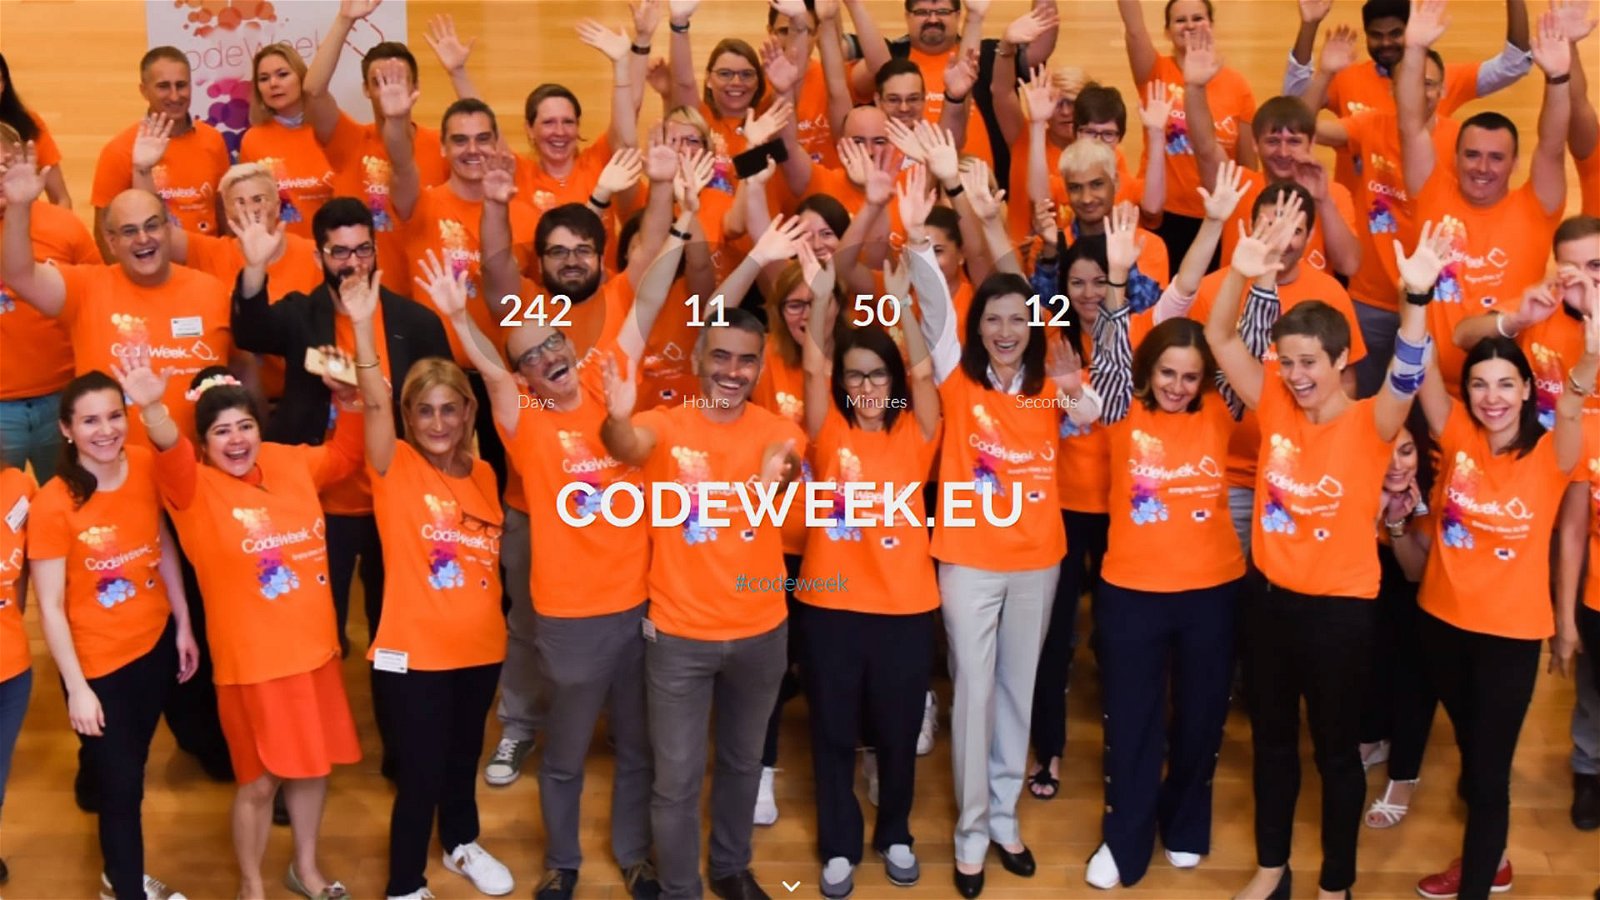 Immagine di UE Code Week 2018 da record con 2,7 milioni di partecipanti. Il coding è diventato popolare